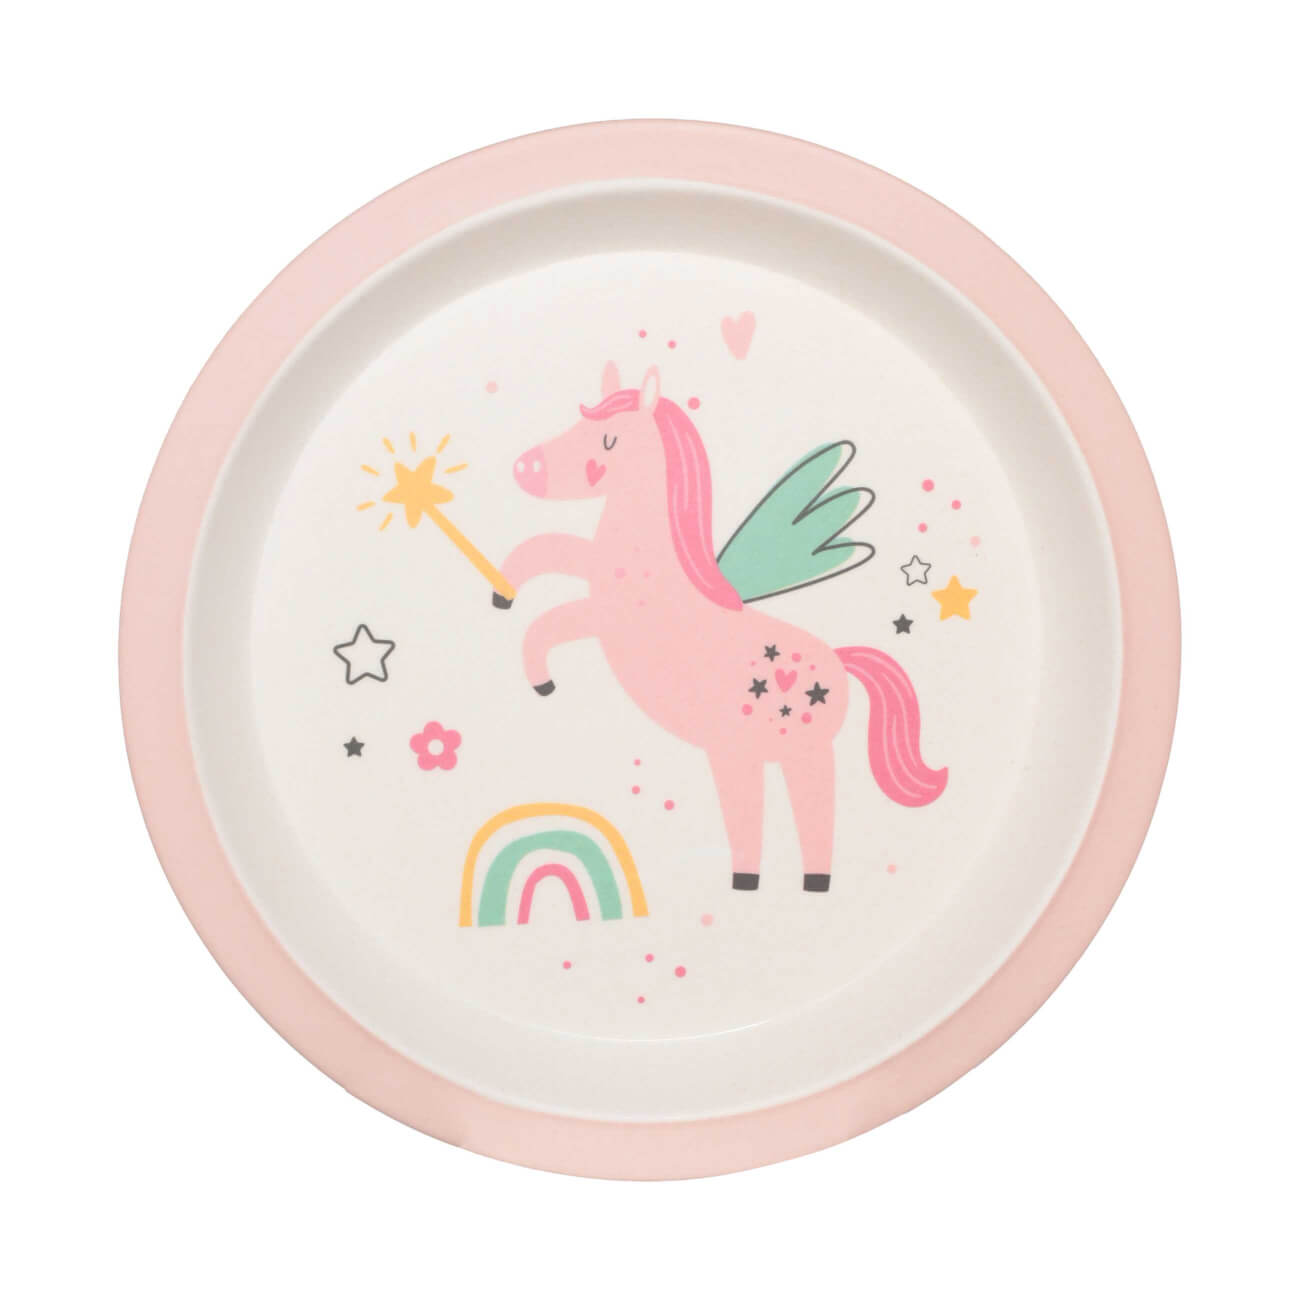 Тарелка закусочная, детская, 21 см, бамбук, розовая, Единорог и радуга, Unicorn тарелка закусочная детская 21 см бамбук голубая динозавр dino